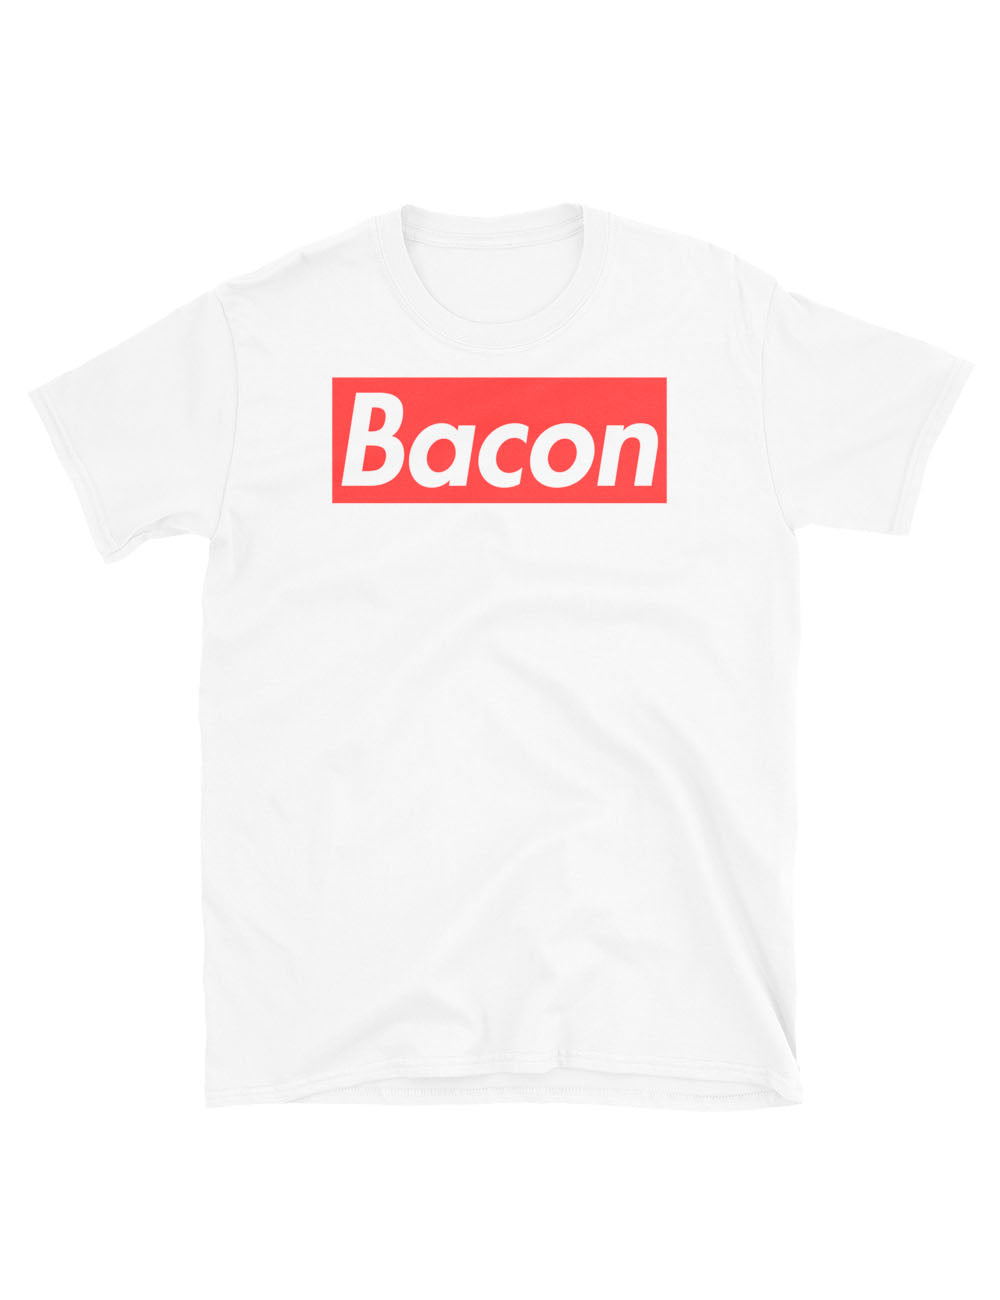 Bacon T Shirt Juniper - bacon t shirt roblox png